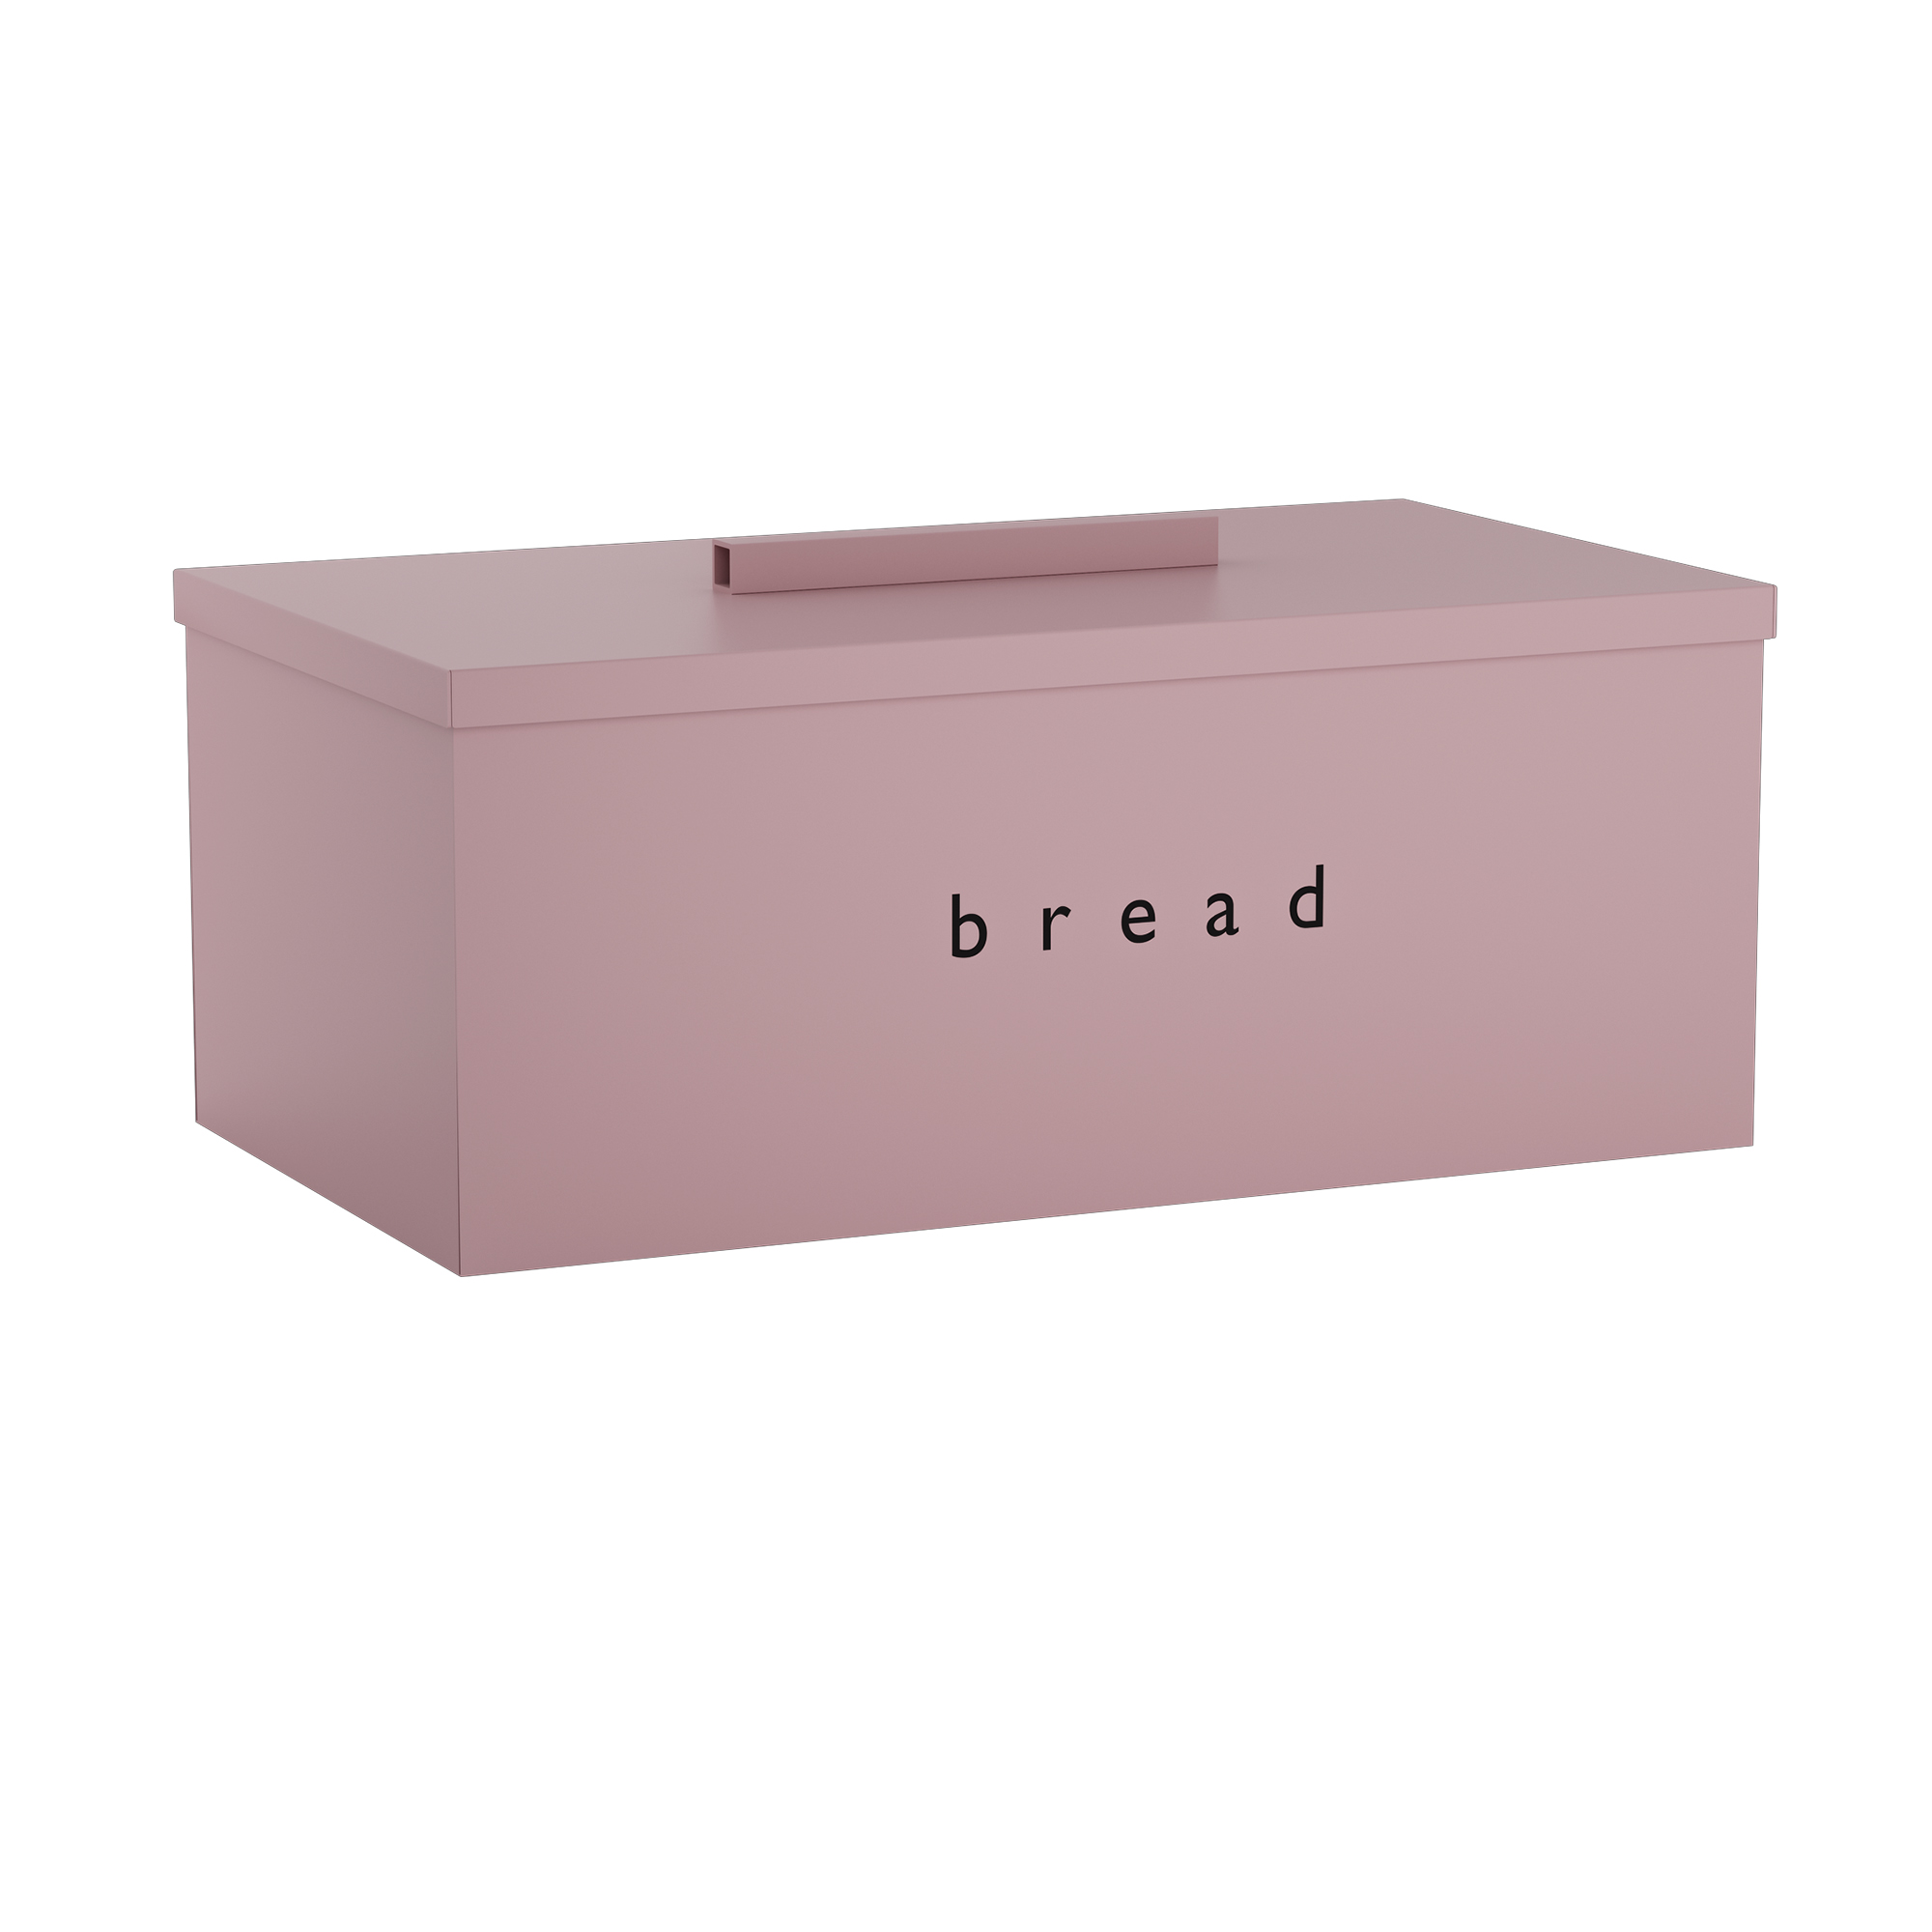 Ψωμιέρα Μεταλλική Matt Pink Pam & Co 40x22x16εκ. 402216-303 (Υλικό: Μεταλλικό, Χρώμα: Ροζ) – Pam & Co – 402216-303